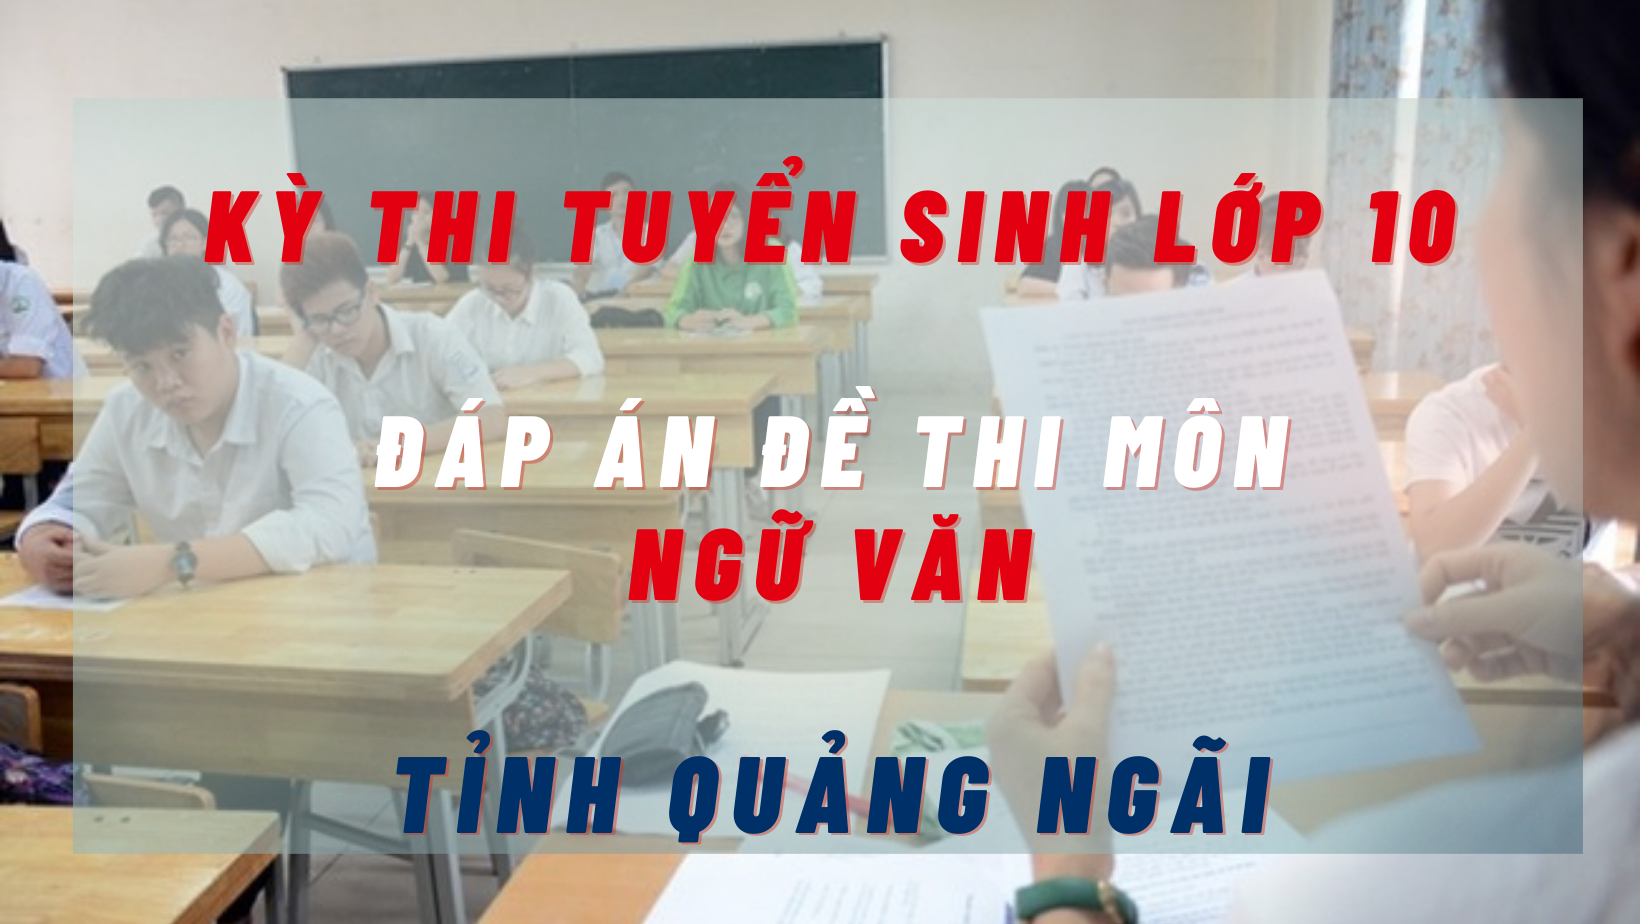 Đáp án đề thi môn Ngữ Văn kỳ thi tuyển sinh lớp 10 tỉnh Quảng Ngãi năm 2022